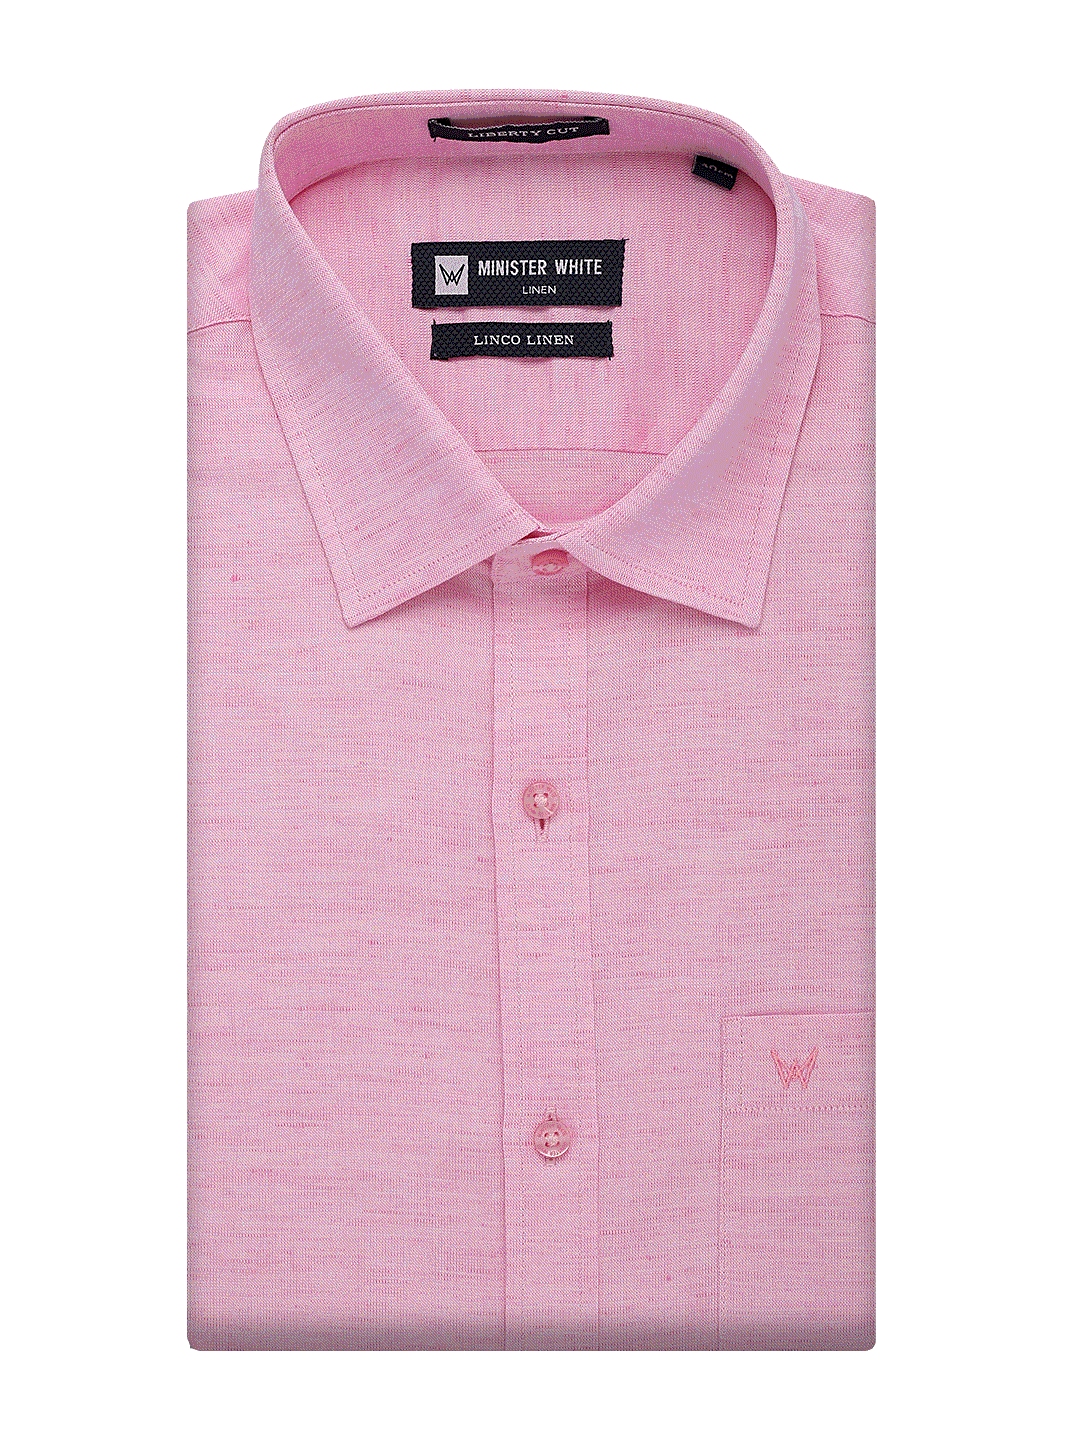 Light Pink Linen Shirt. Liberty Cut. Linco Linen